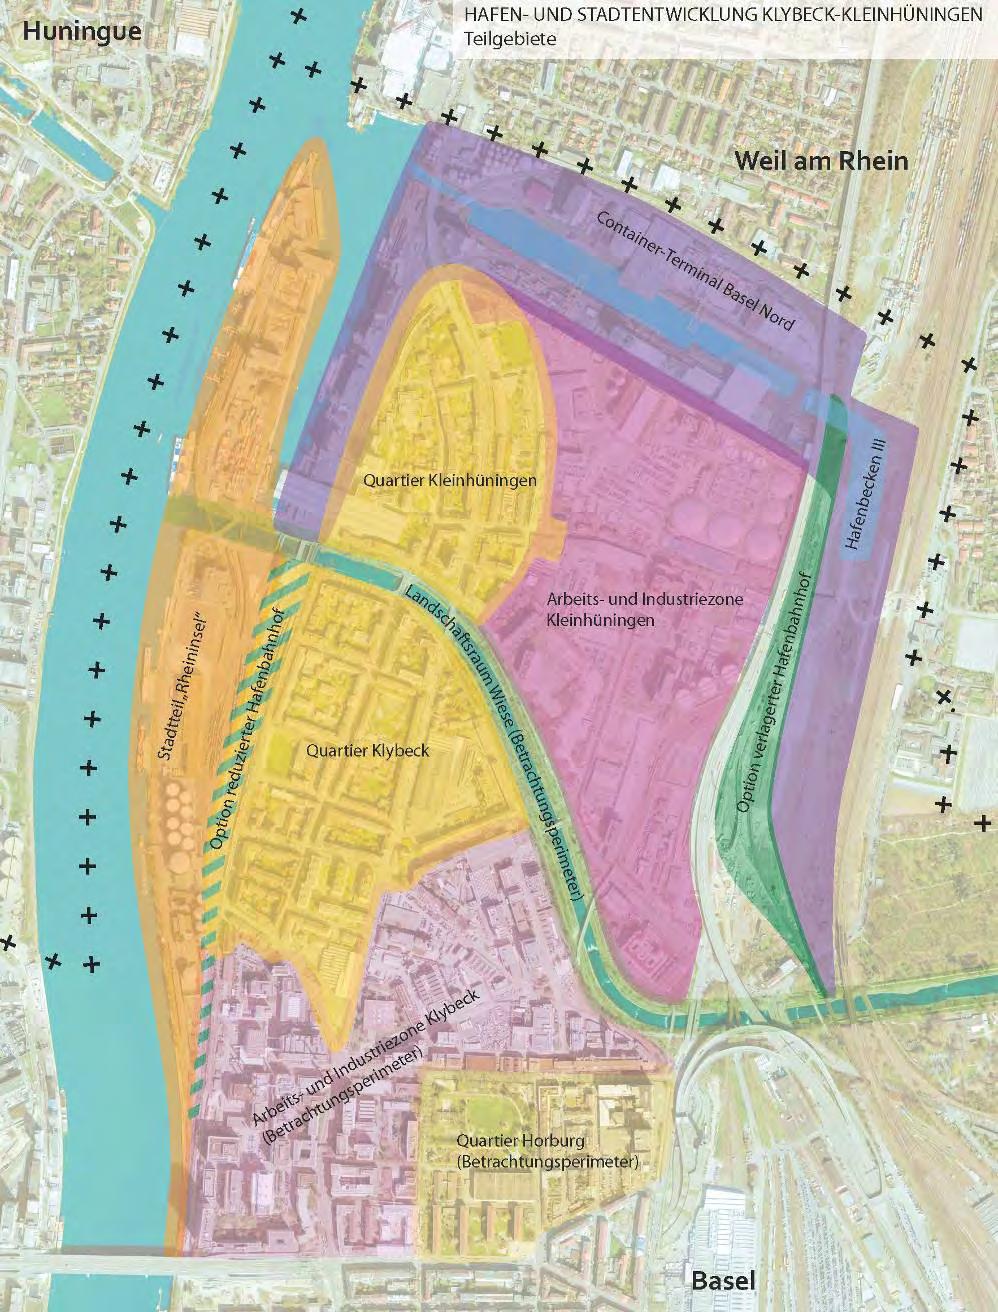 Elemente des Stadtteil-Entwicklungsplanes Klybeck-Kleinhüningen Phase 1 2013-2014 Fokus auf - Hafenkerngebiet und neue Hafenflächen - Rheininsel (Klybeck- und Westquai) Phase 2 2014-2015 -